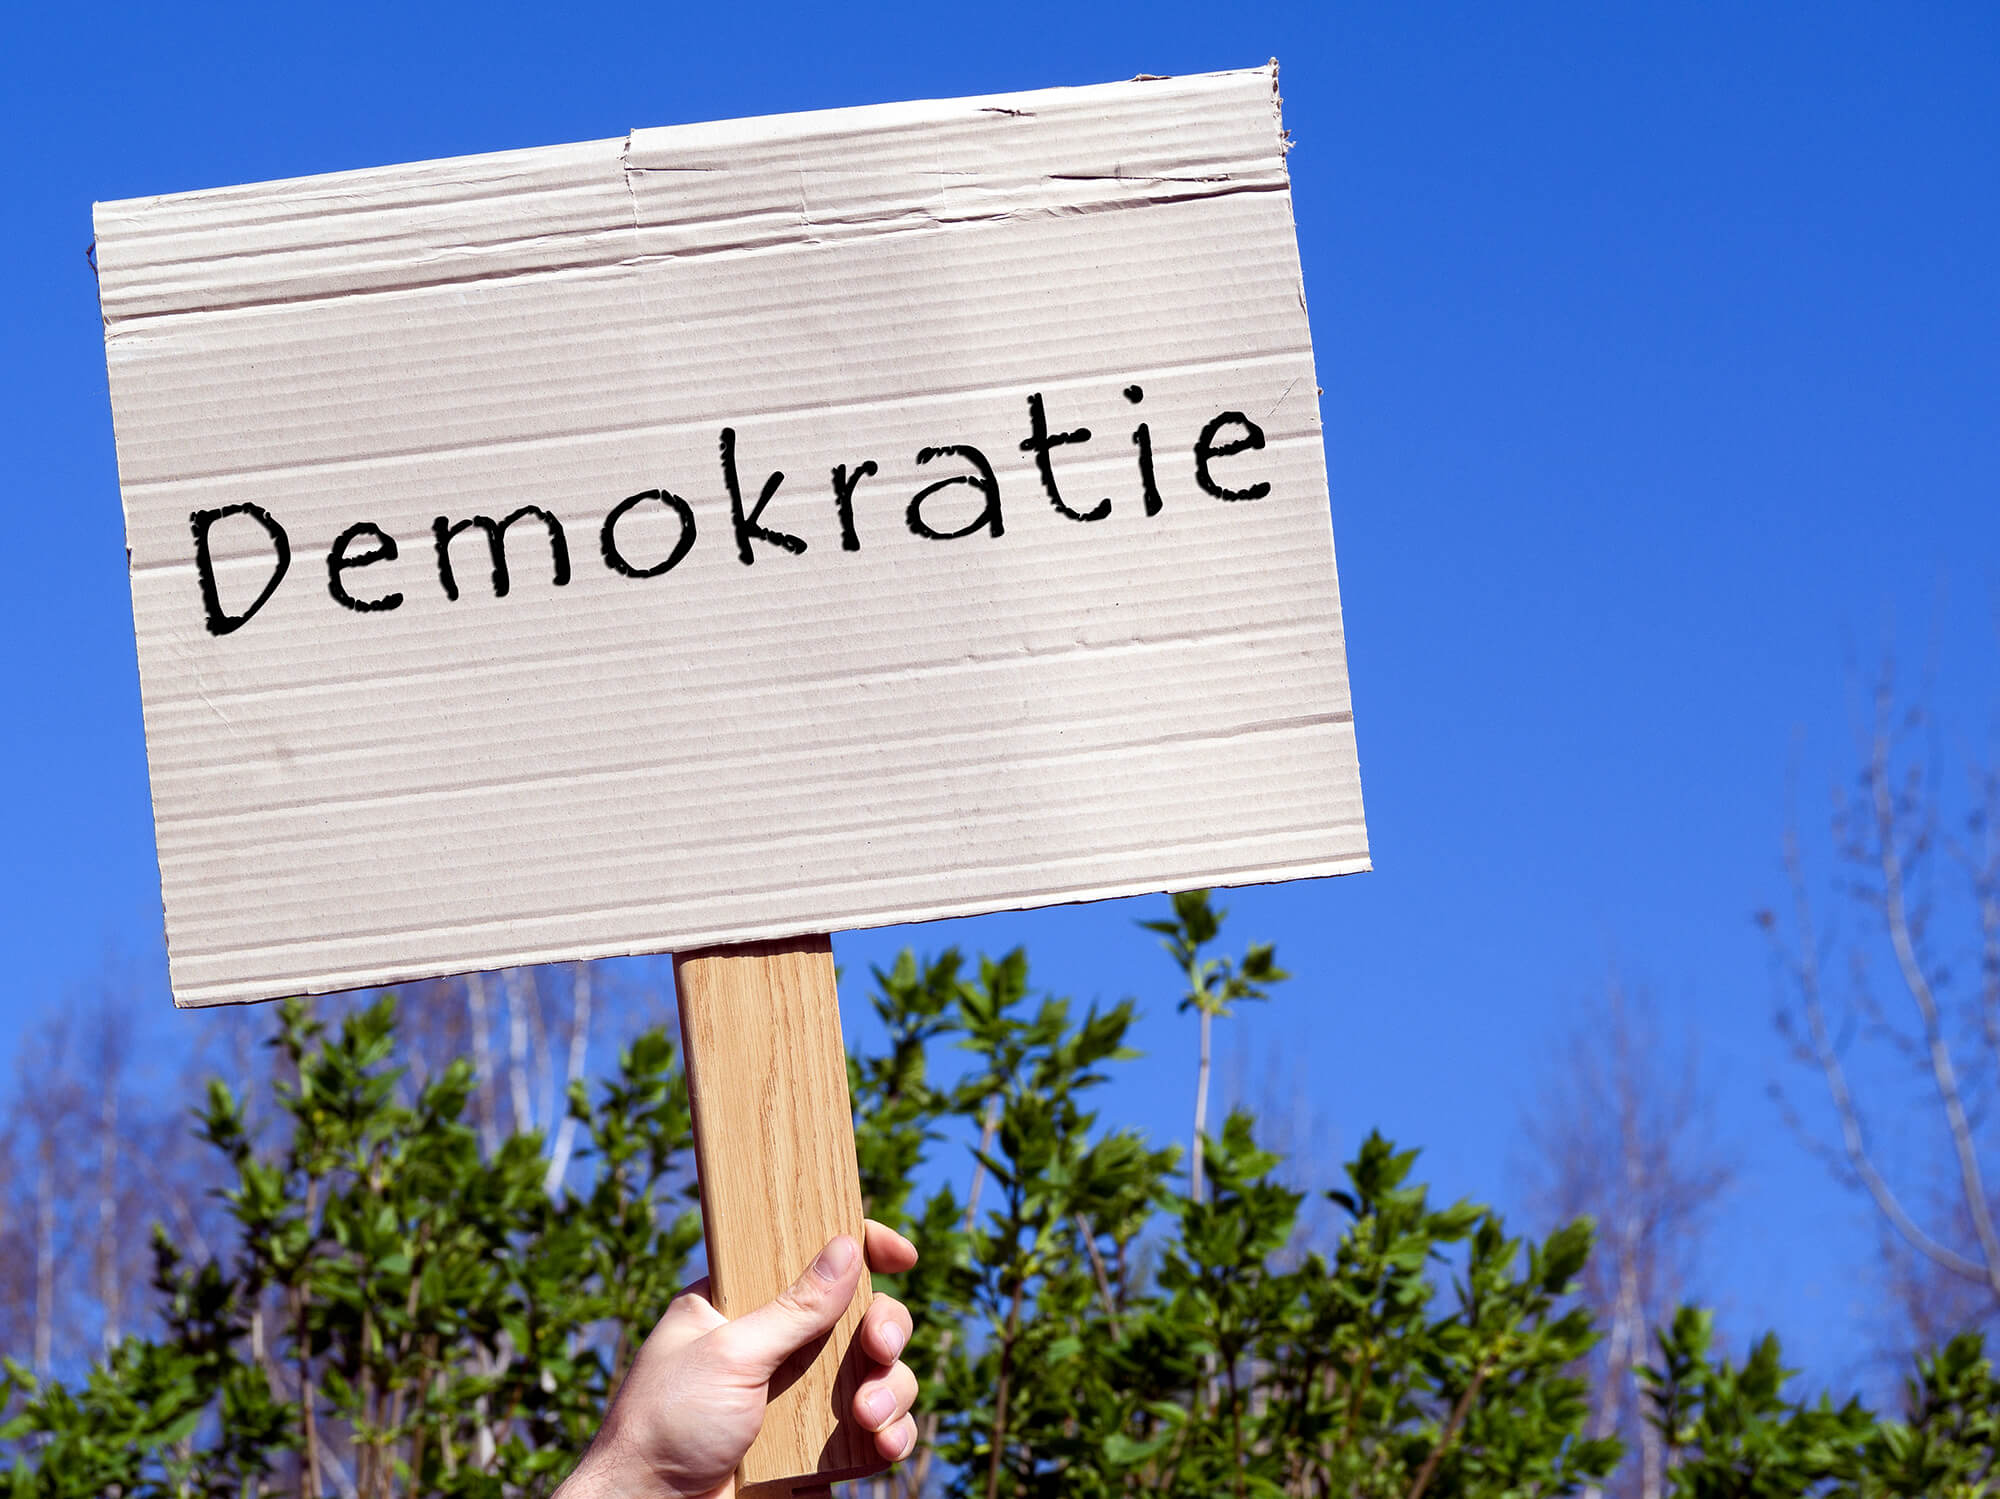 Seit Mitte Januar gibt es bundesweit und auch im Kreis Heinsberg eine Bewegung gegen rechtsextreme Kräfte und für Demokratie. Foto: iStock/Animaflora